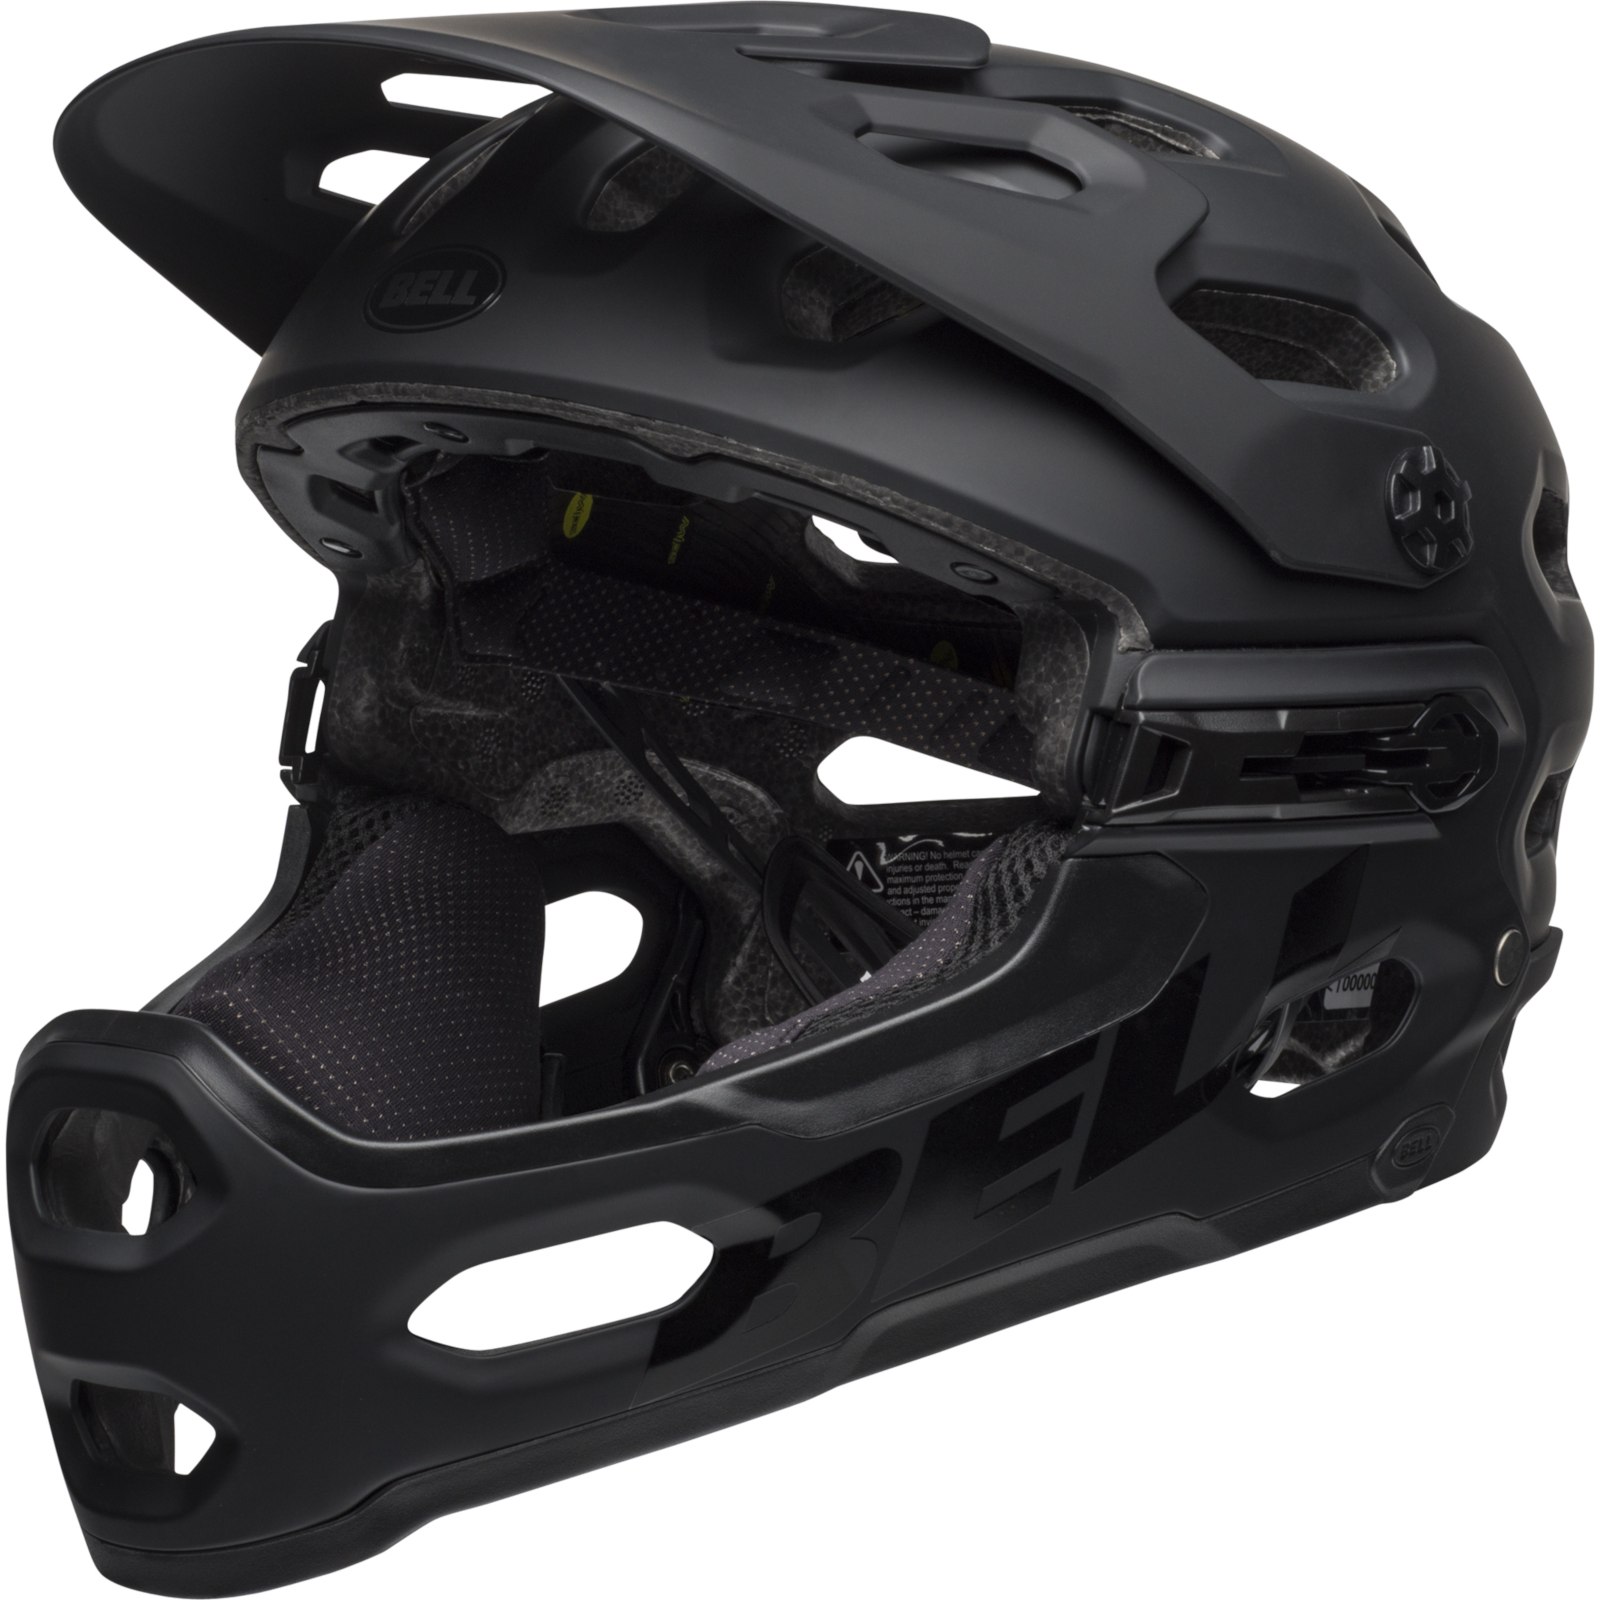 Productfoto van Bell Super 3R MIPS Helm - matte black/gray